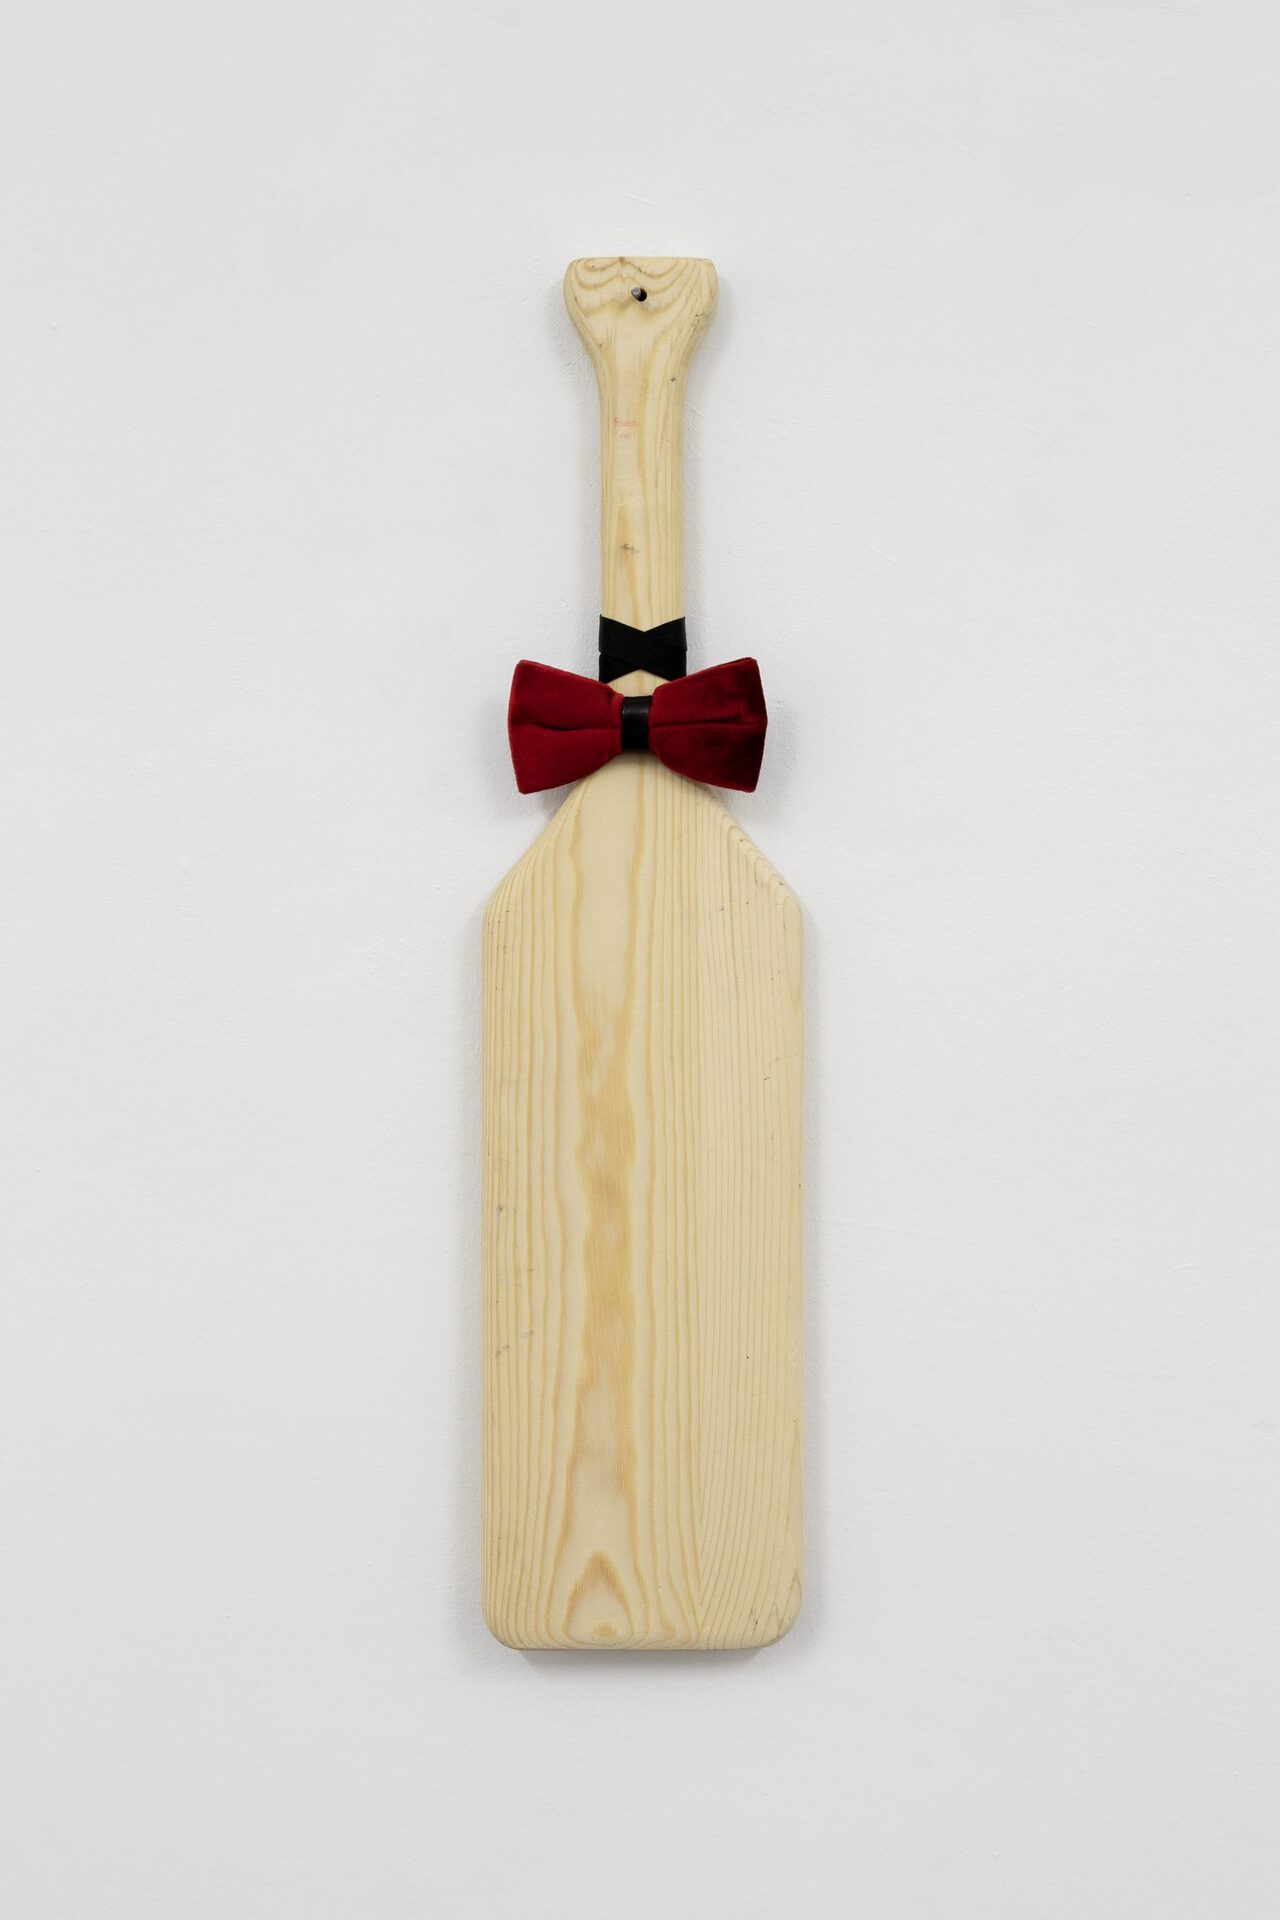 Adam Martin, Mr. Paddle, 2019, Spanking paddle, bow tie, 60cm x 14cm x 2cm